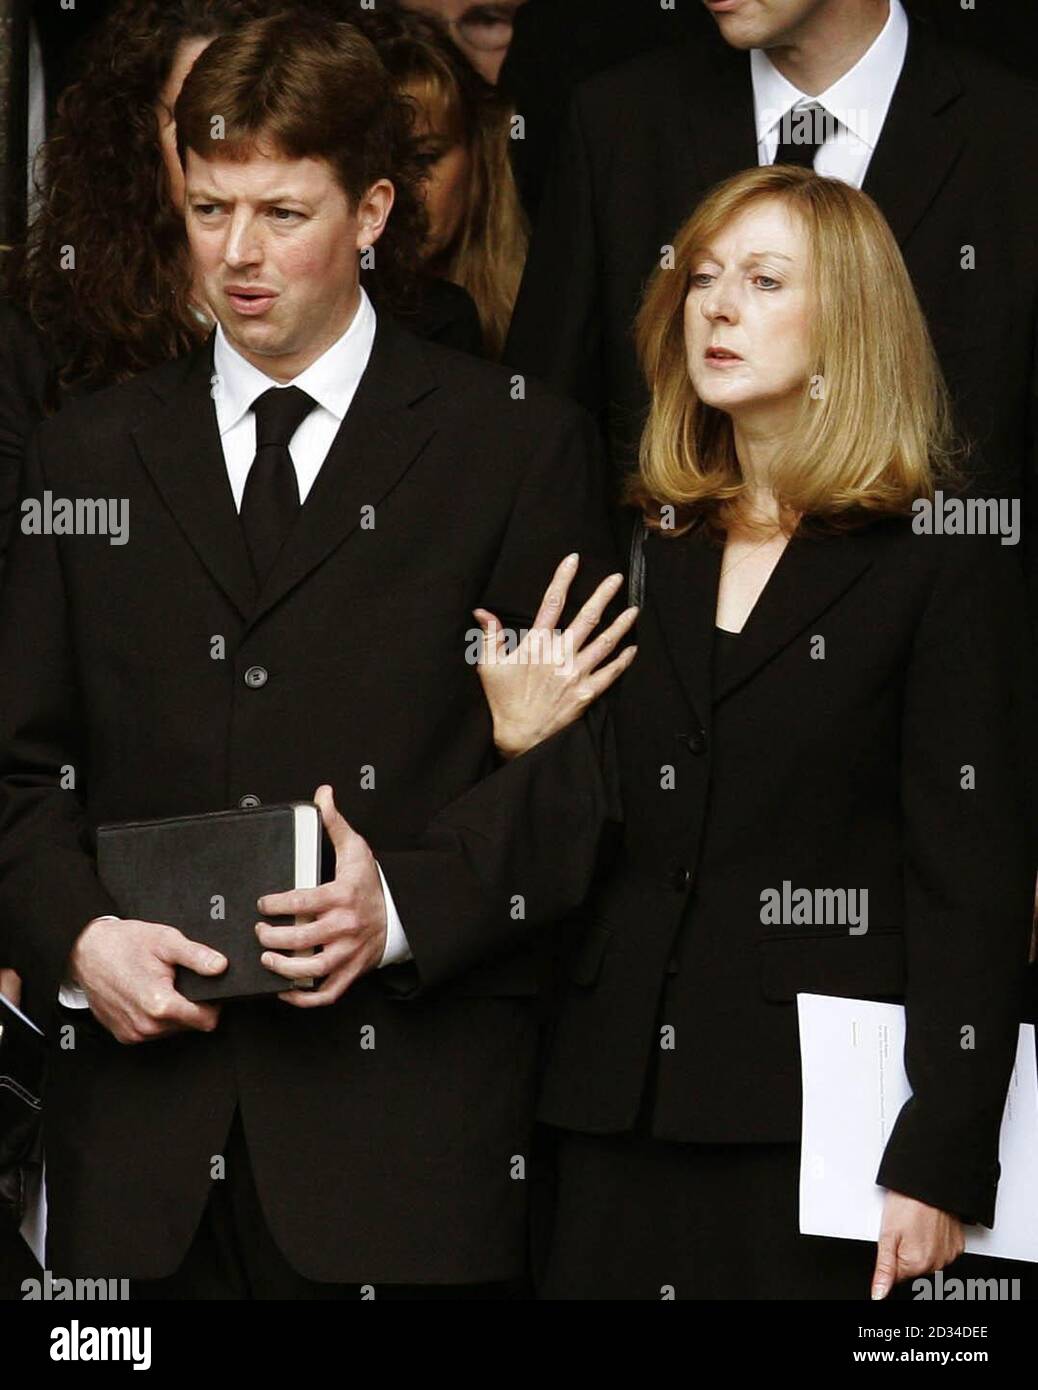 Robin Cooks Sohn Chris Cook mit seiner Witwe Gaynor (rechts) verlassen das Hotel nach der Beerdigung des ehemaligen Außenministers Robin Cook in der St. Giles Cathedral. Stockfoto